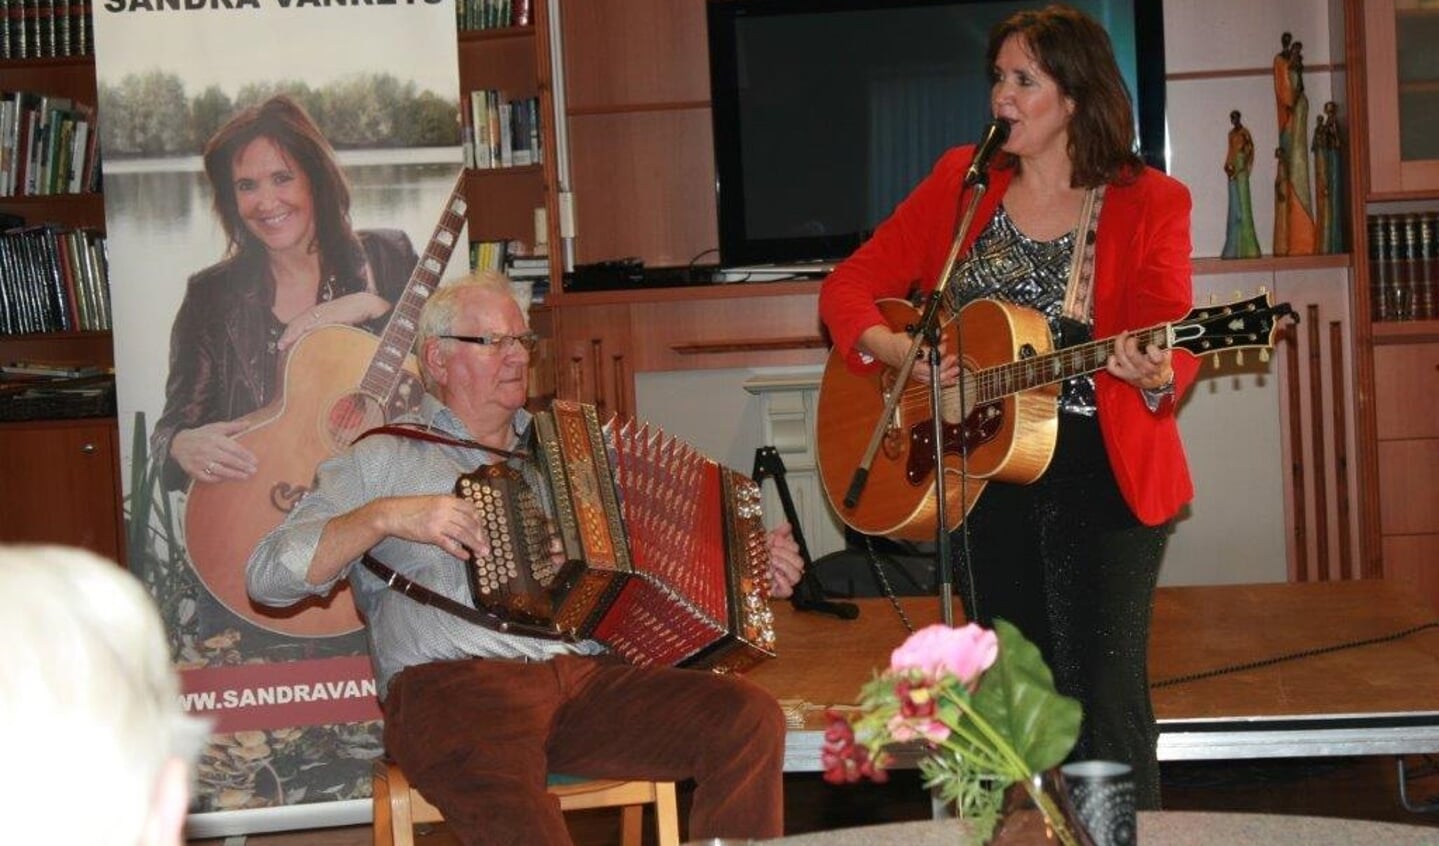 Johan te Molder op zijn harmonica, samen met Sandra Vanreijs op gitaar.